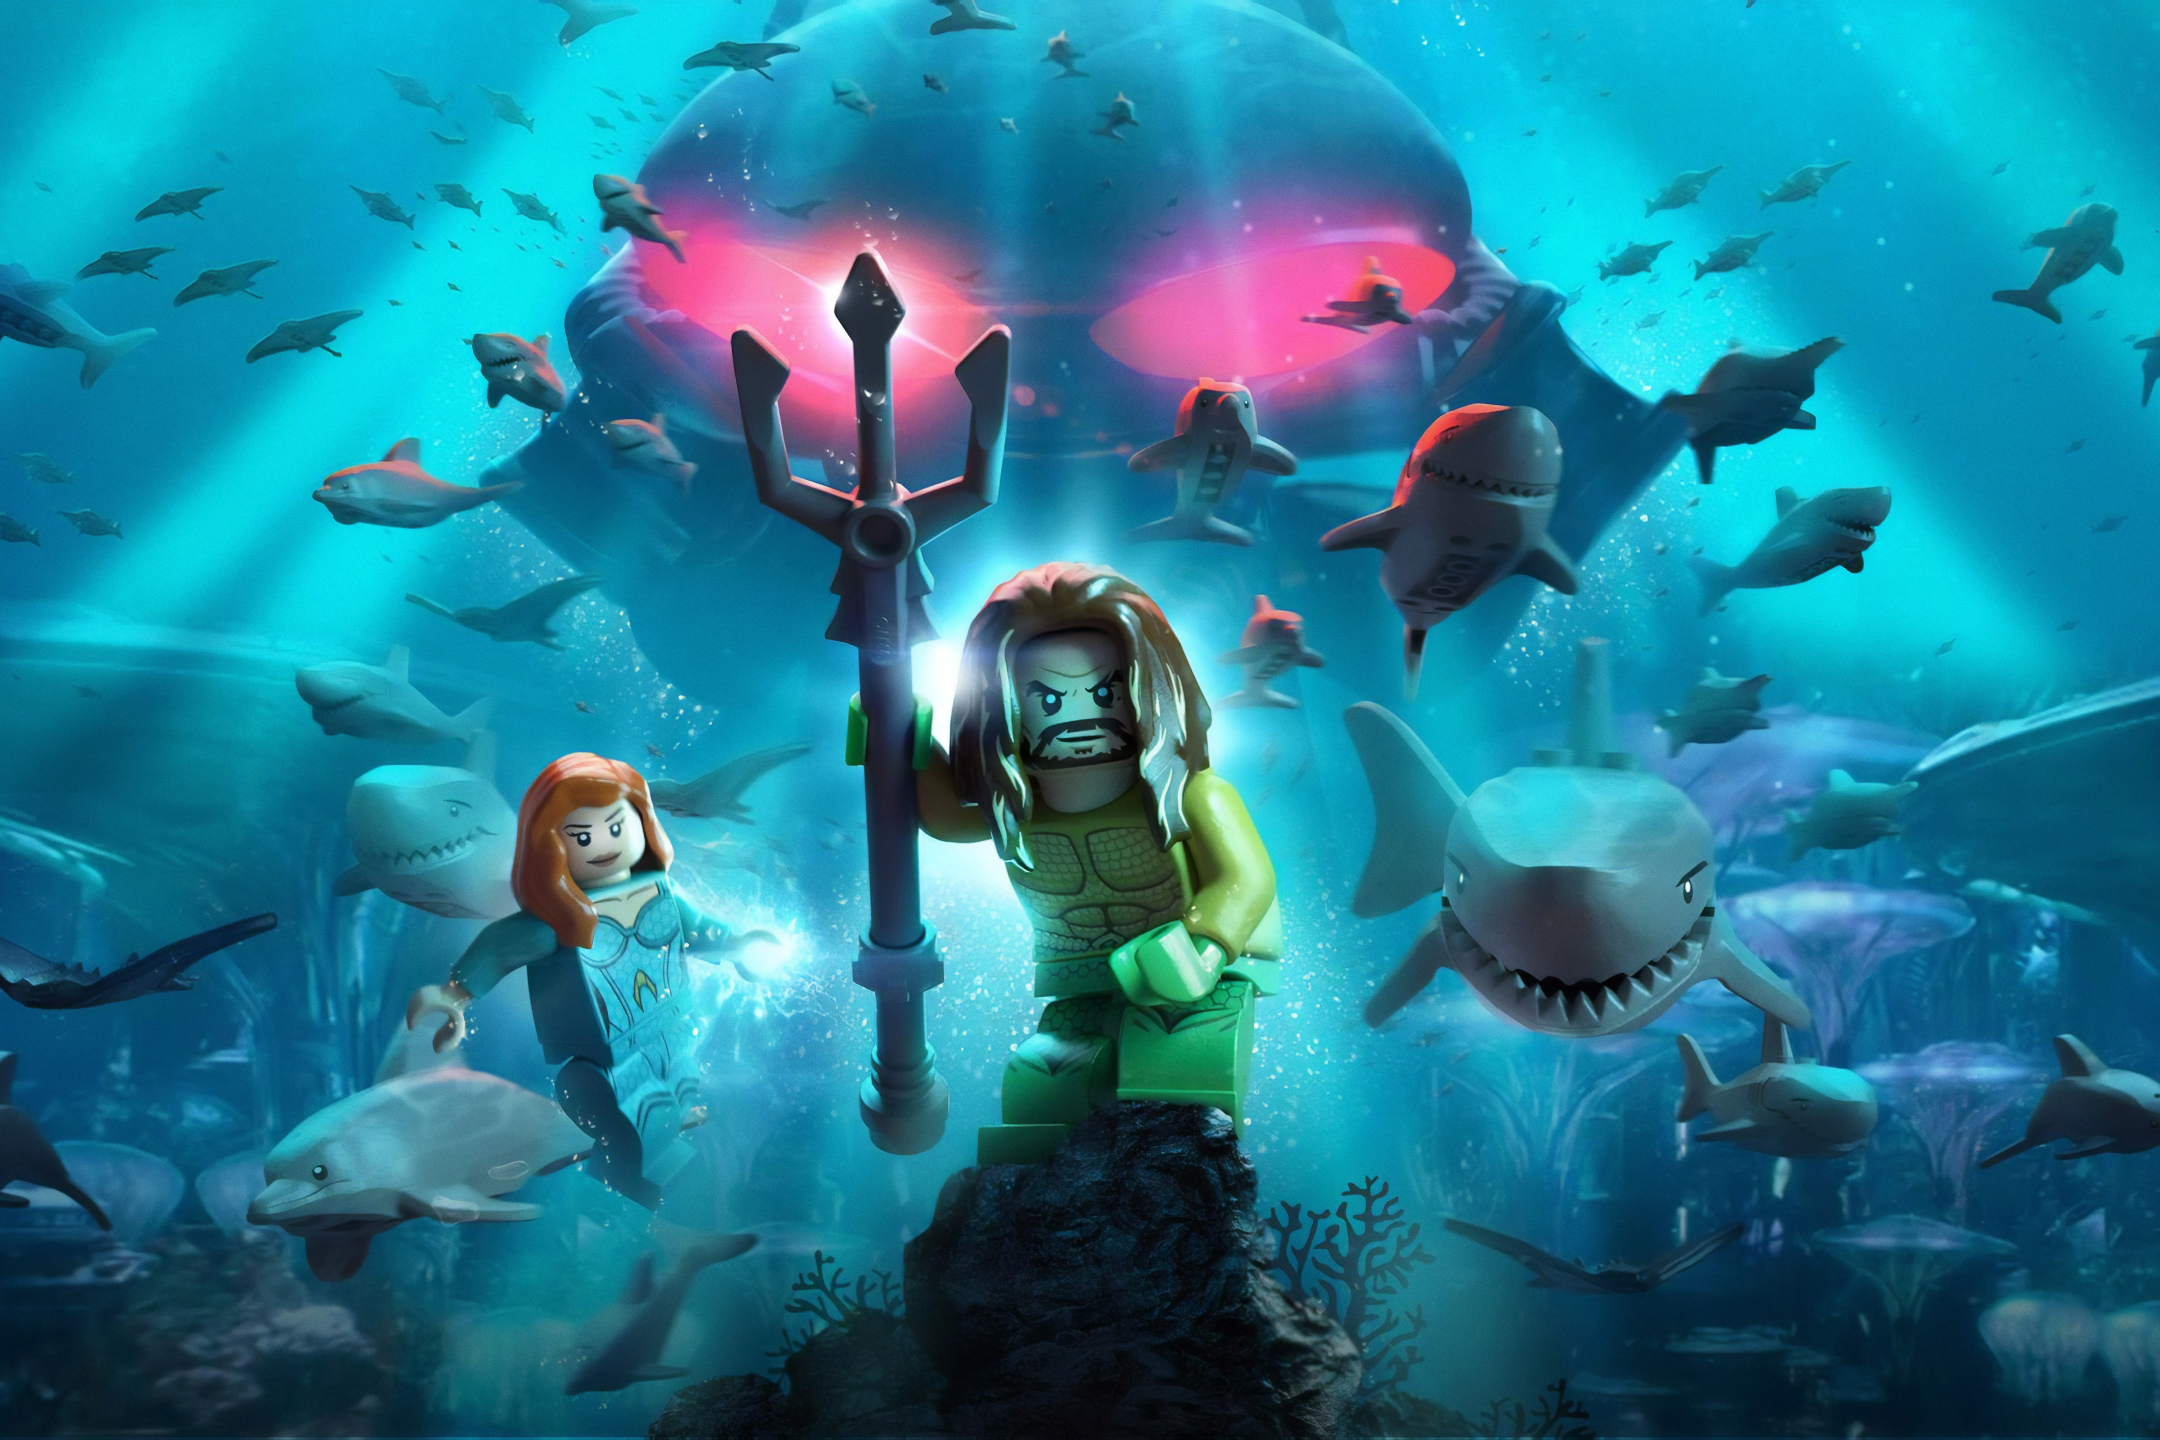 Descarga gratuita de fondo de pantalla para móvil de Lego, Submarino, Tiburón, Videojuego, Submarina, Aquamán, Mera (Dc Comics), Lego Dc Super Villains.